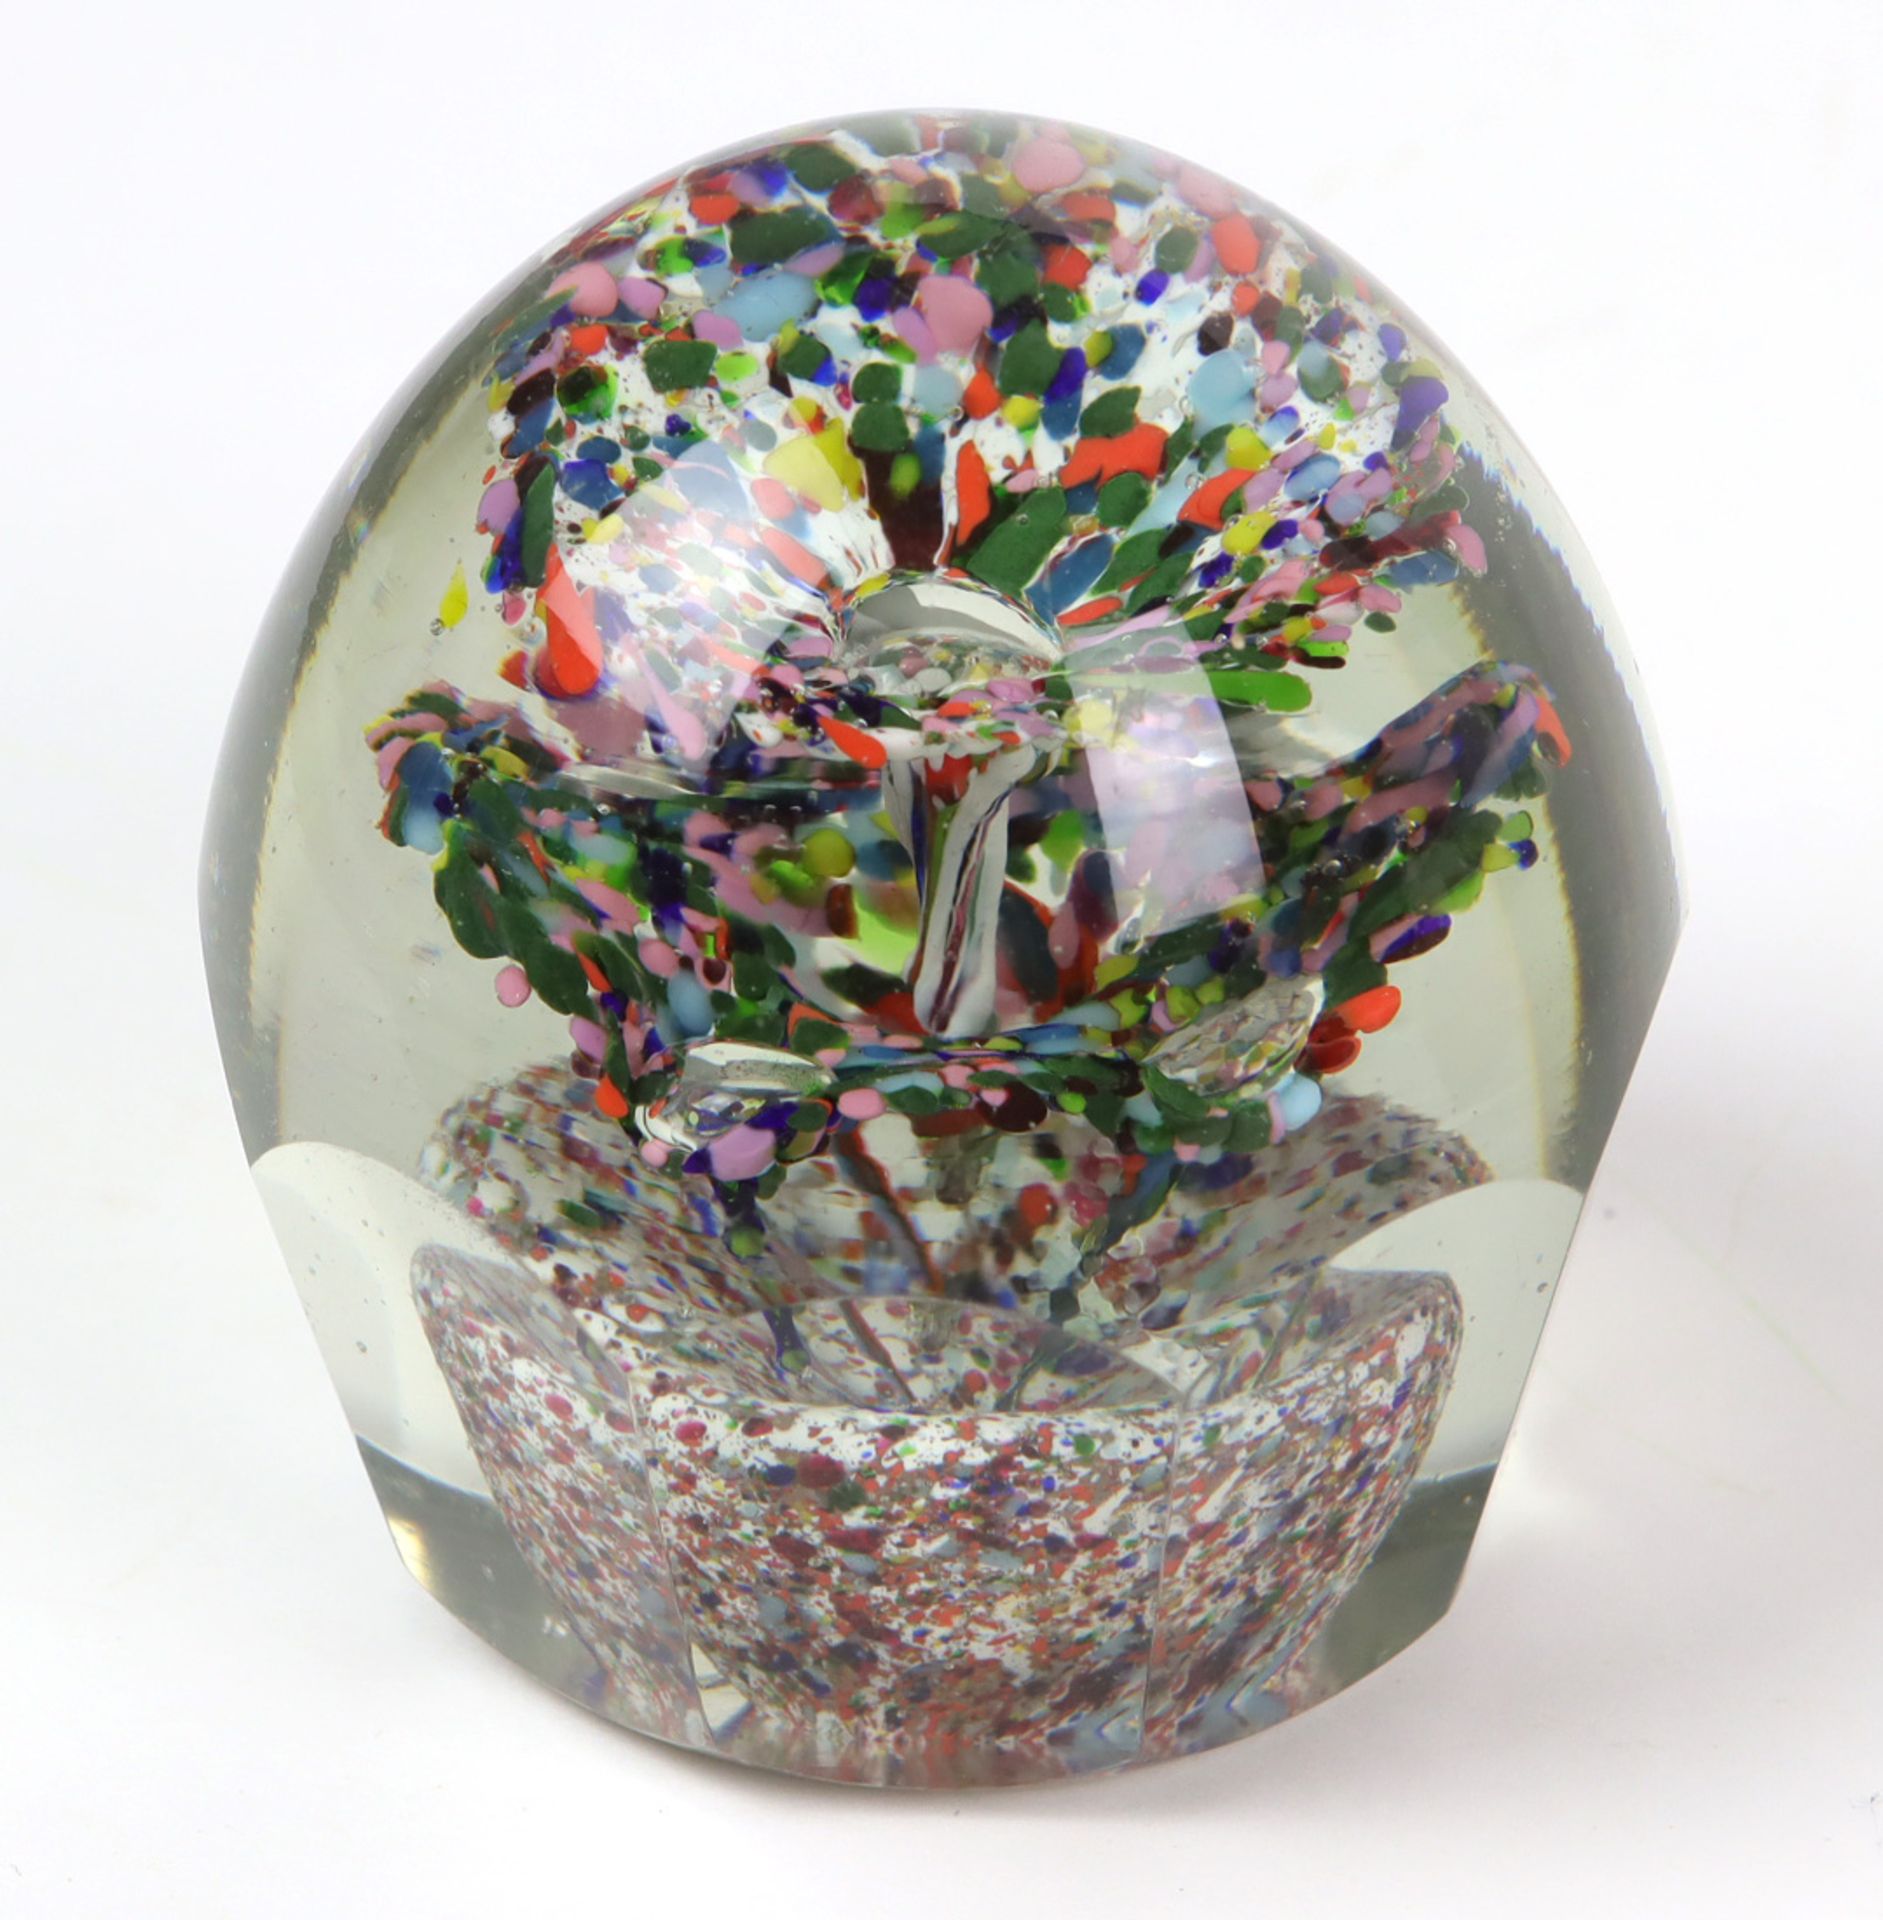 2 Briefbeschwererfarbloses Kristallglas mit geschnittenem Boden, gerundete u. facettiert - Bild 3 aus 3